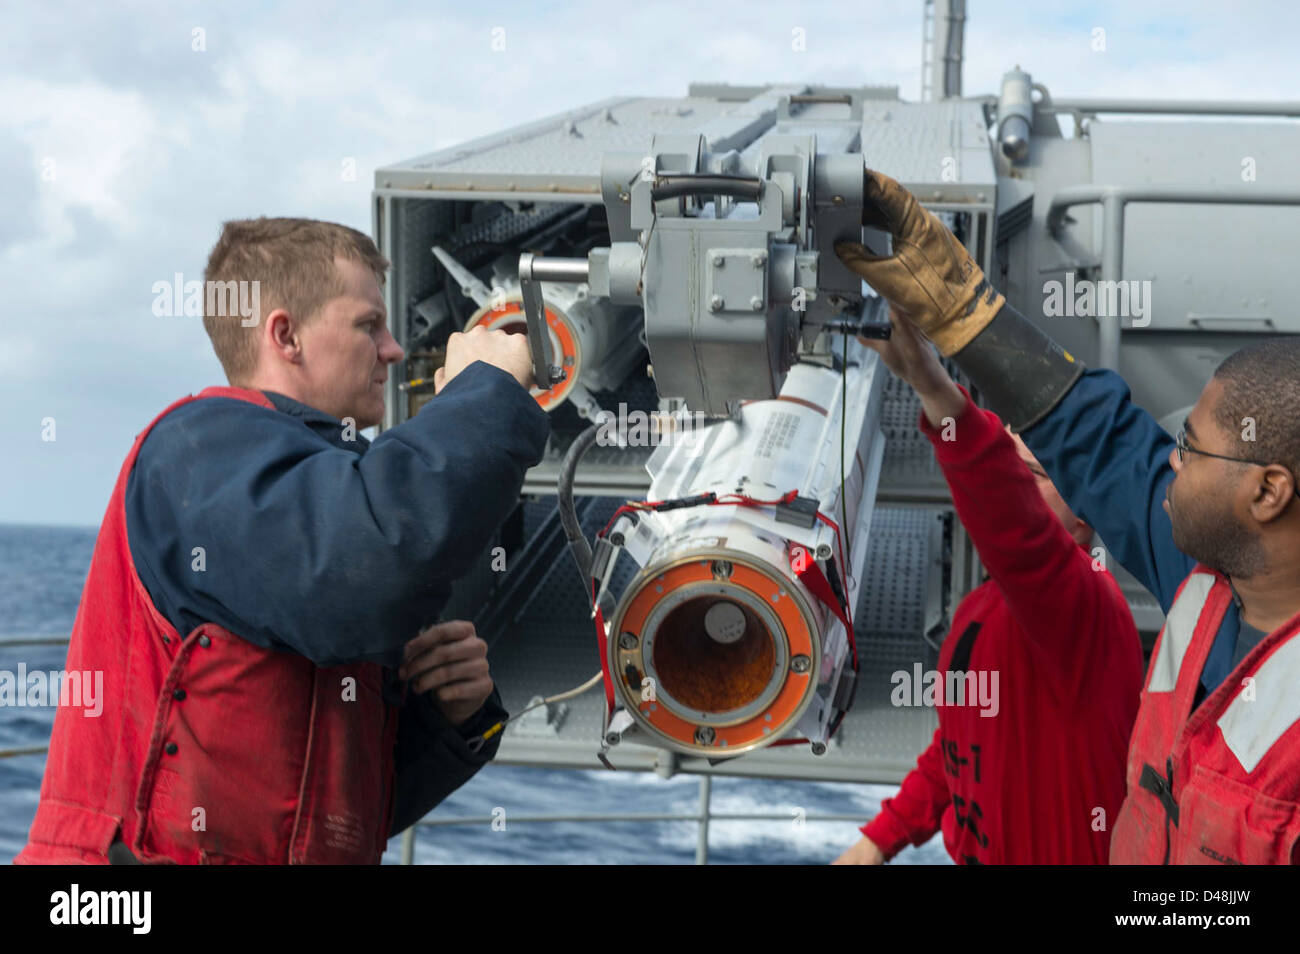 Sailors load a NATO Sea Sparrow missile at sea. Stock Photo